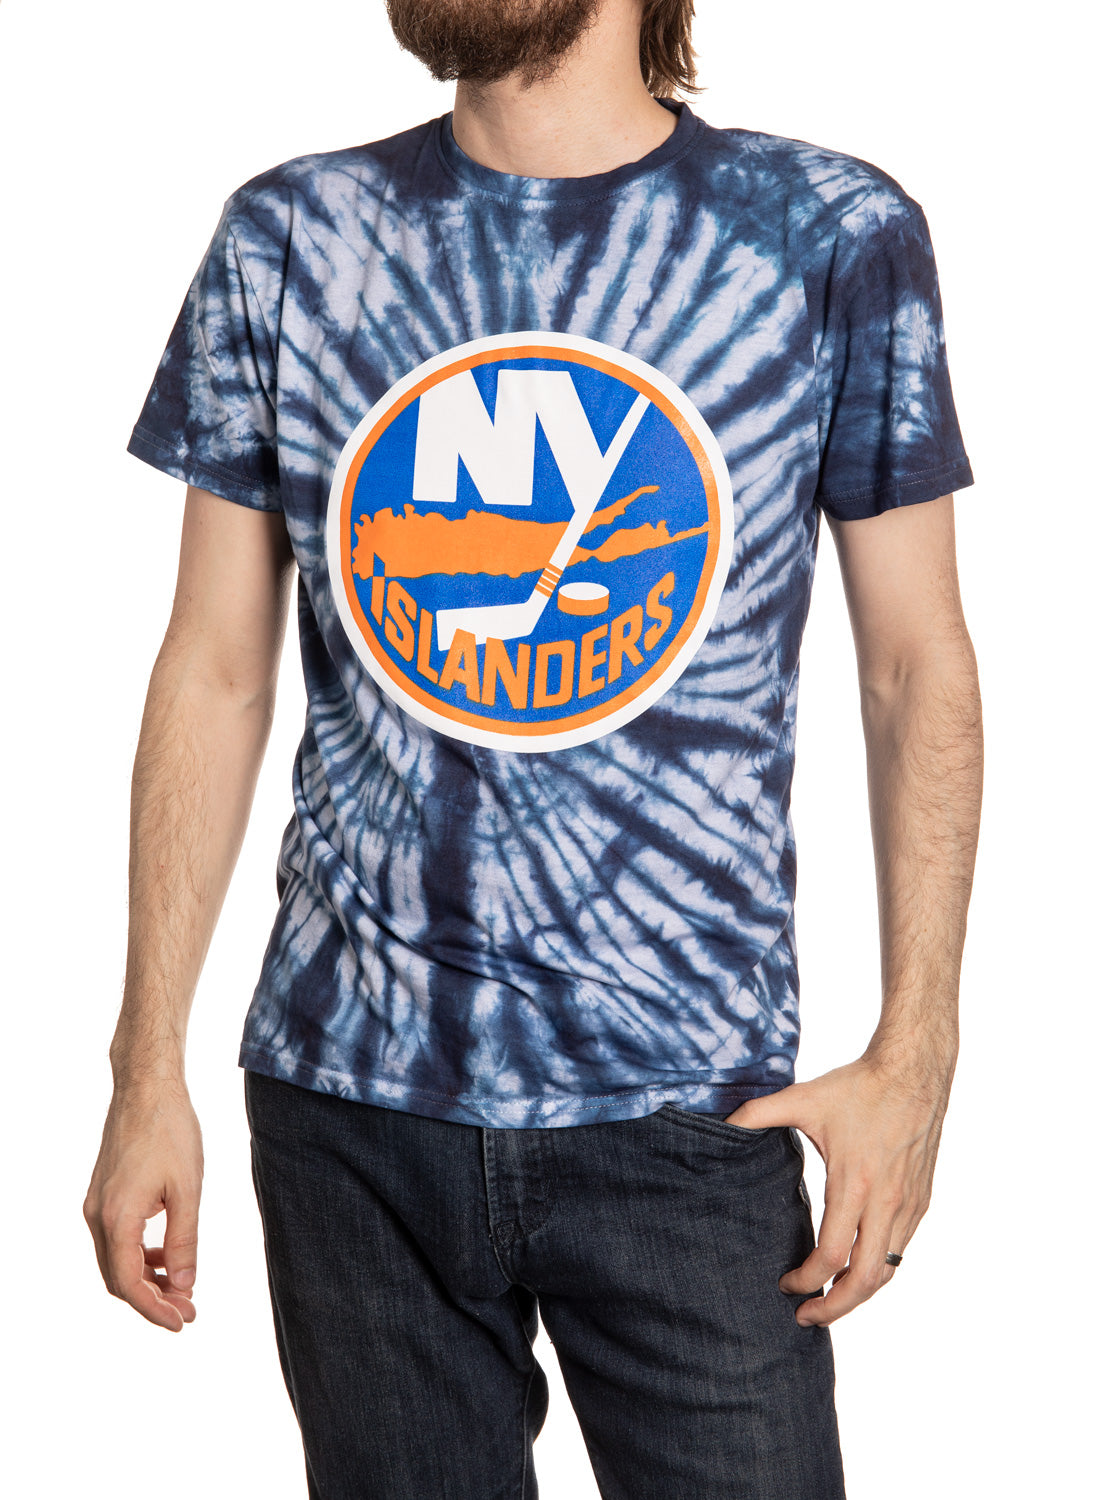  Calhoun NHL Surf & Skate Mens Spiral Tie Dye T-Shirt